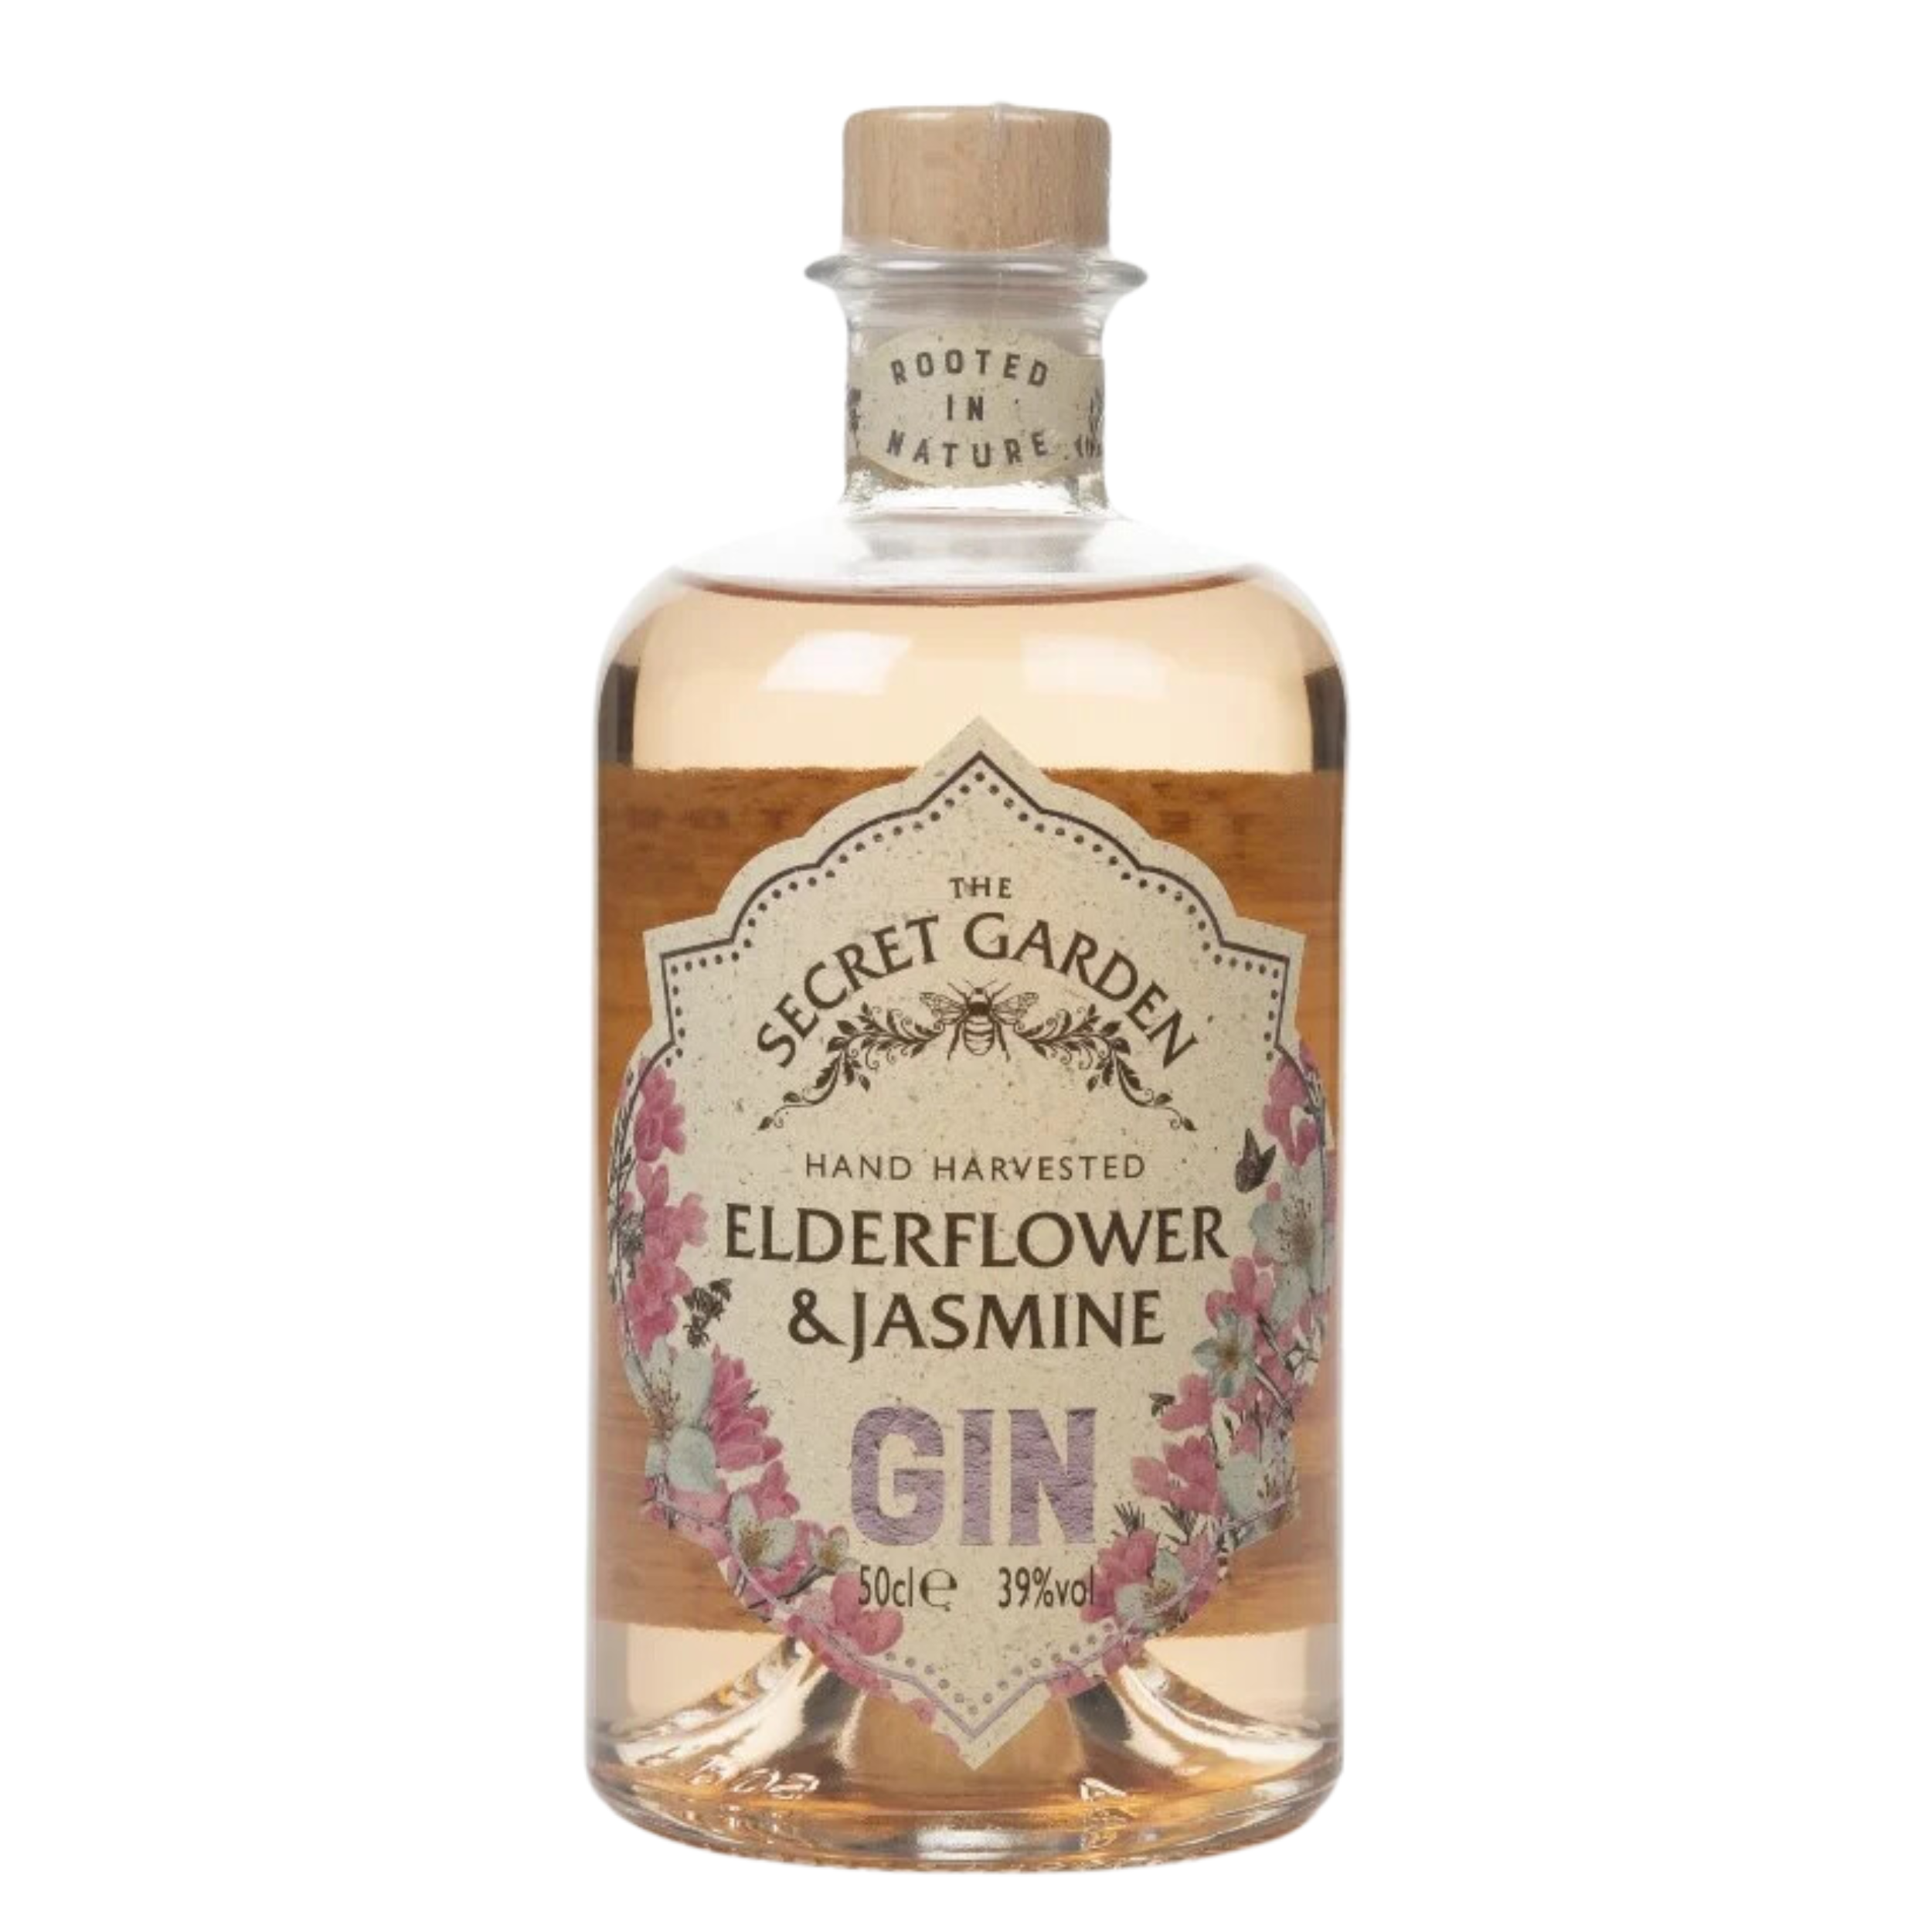 Ederflower & Jasmine Gin - The Secret Garden Distillery - 39° - 50cl